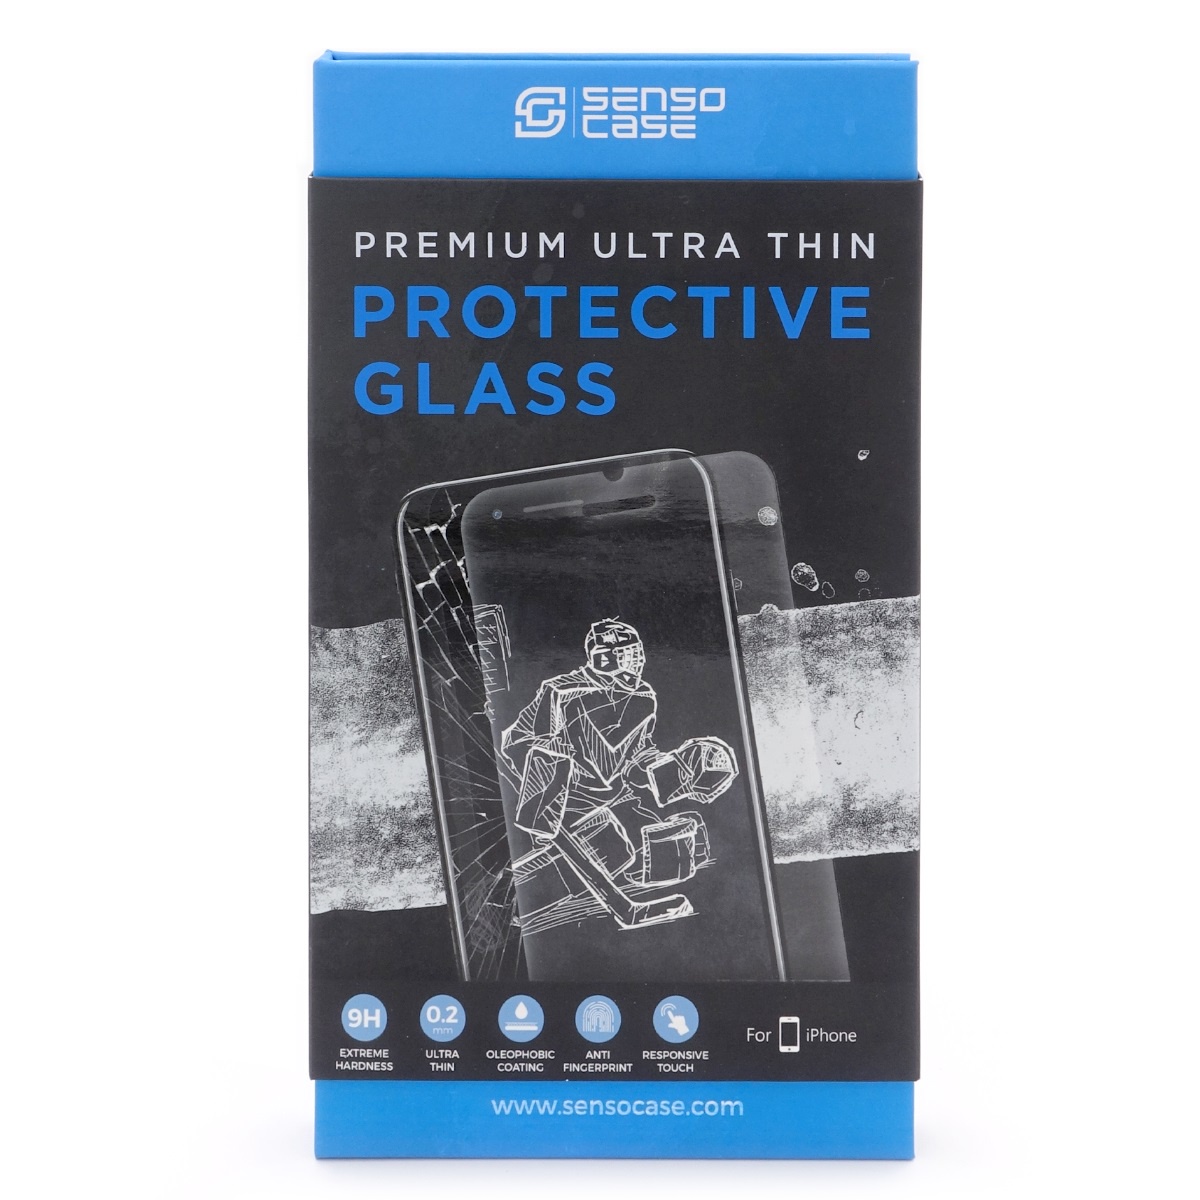 фото Защитное стекло SensoCase для iPhone 6/6s Protective Glass 0.2 mm 2,5D 9H+, ультратонкое, кристально прозрачное, PG-IP6